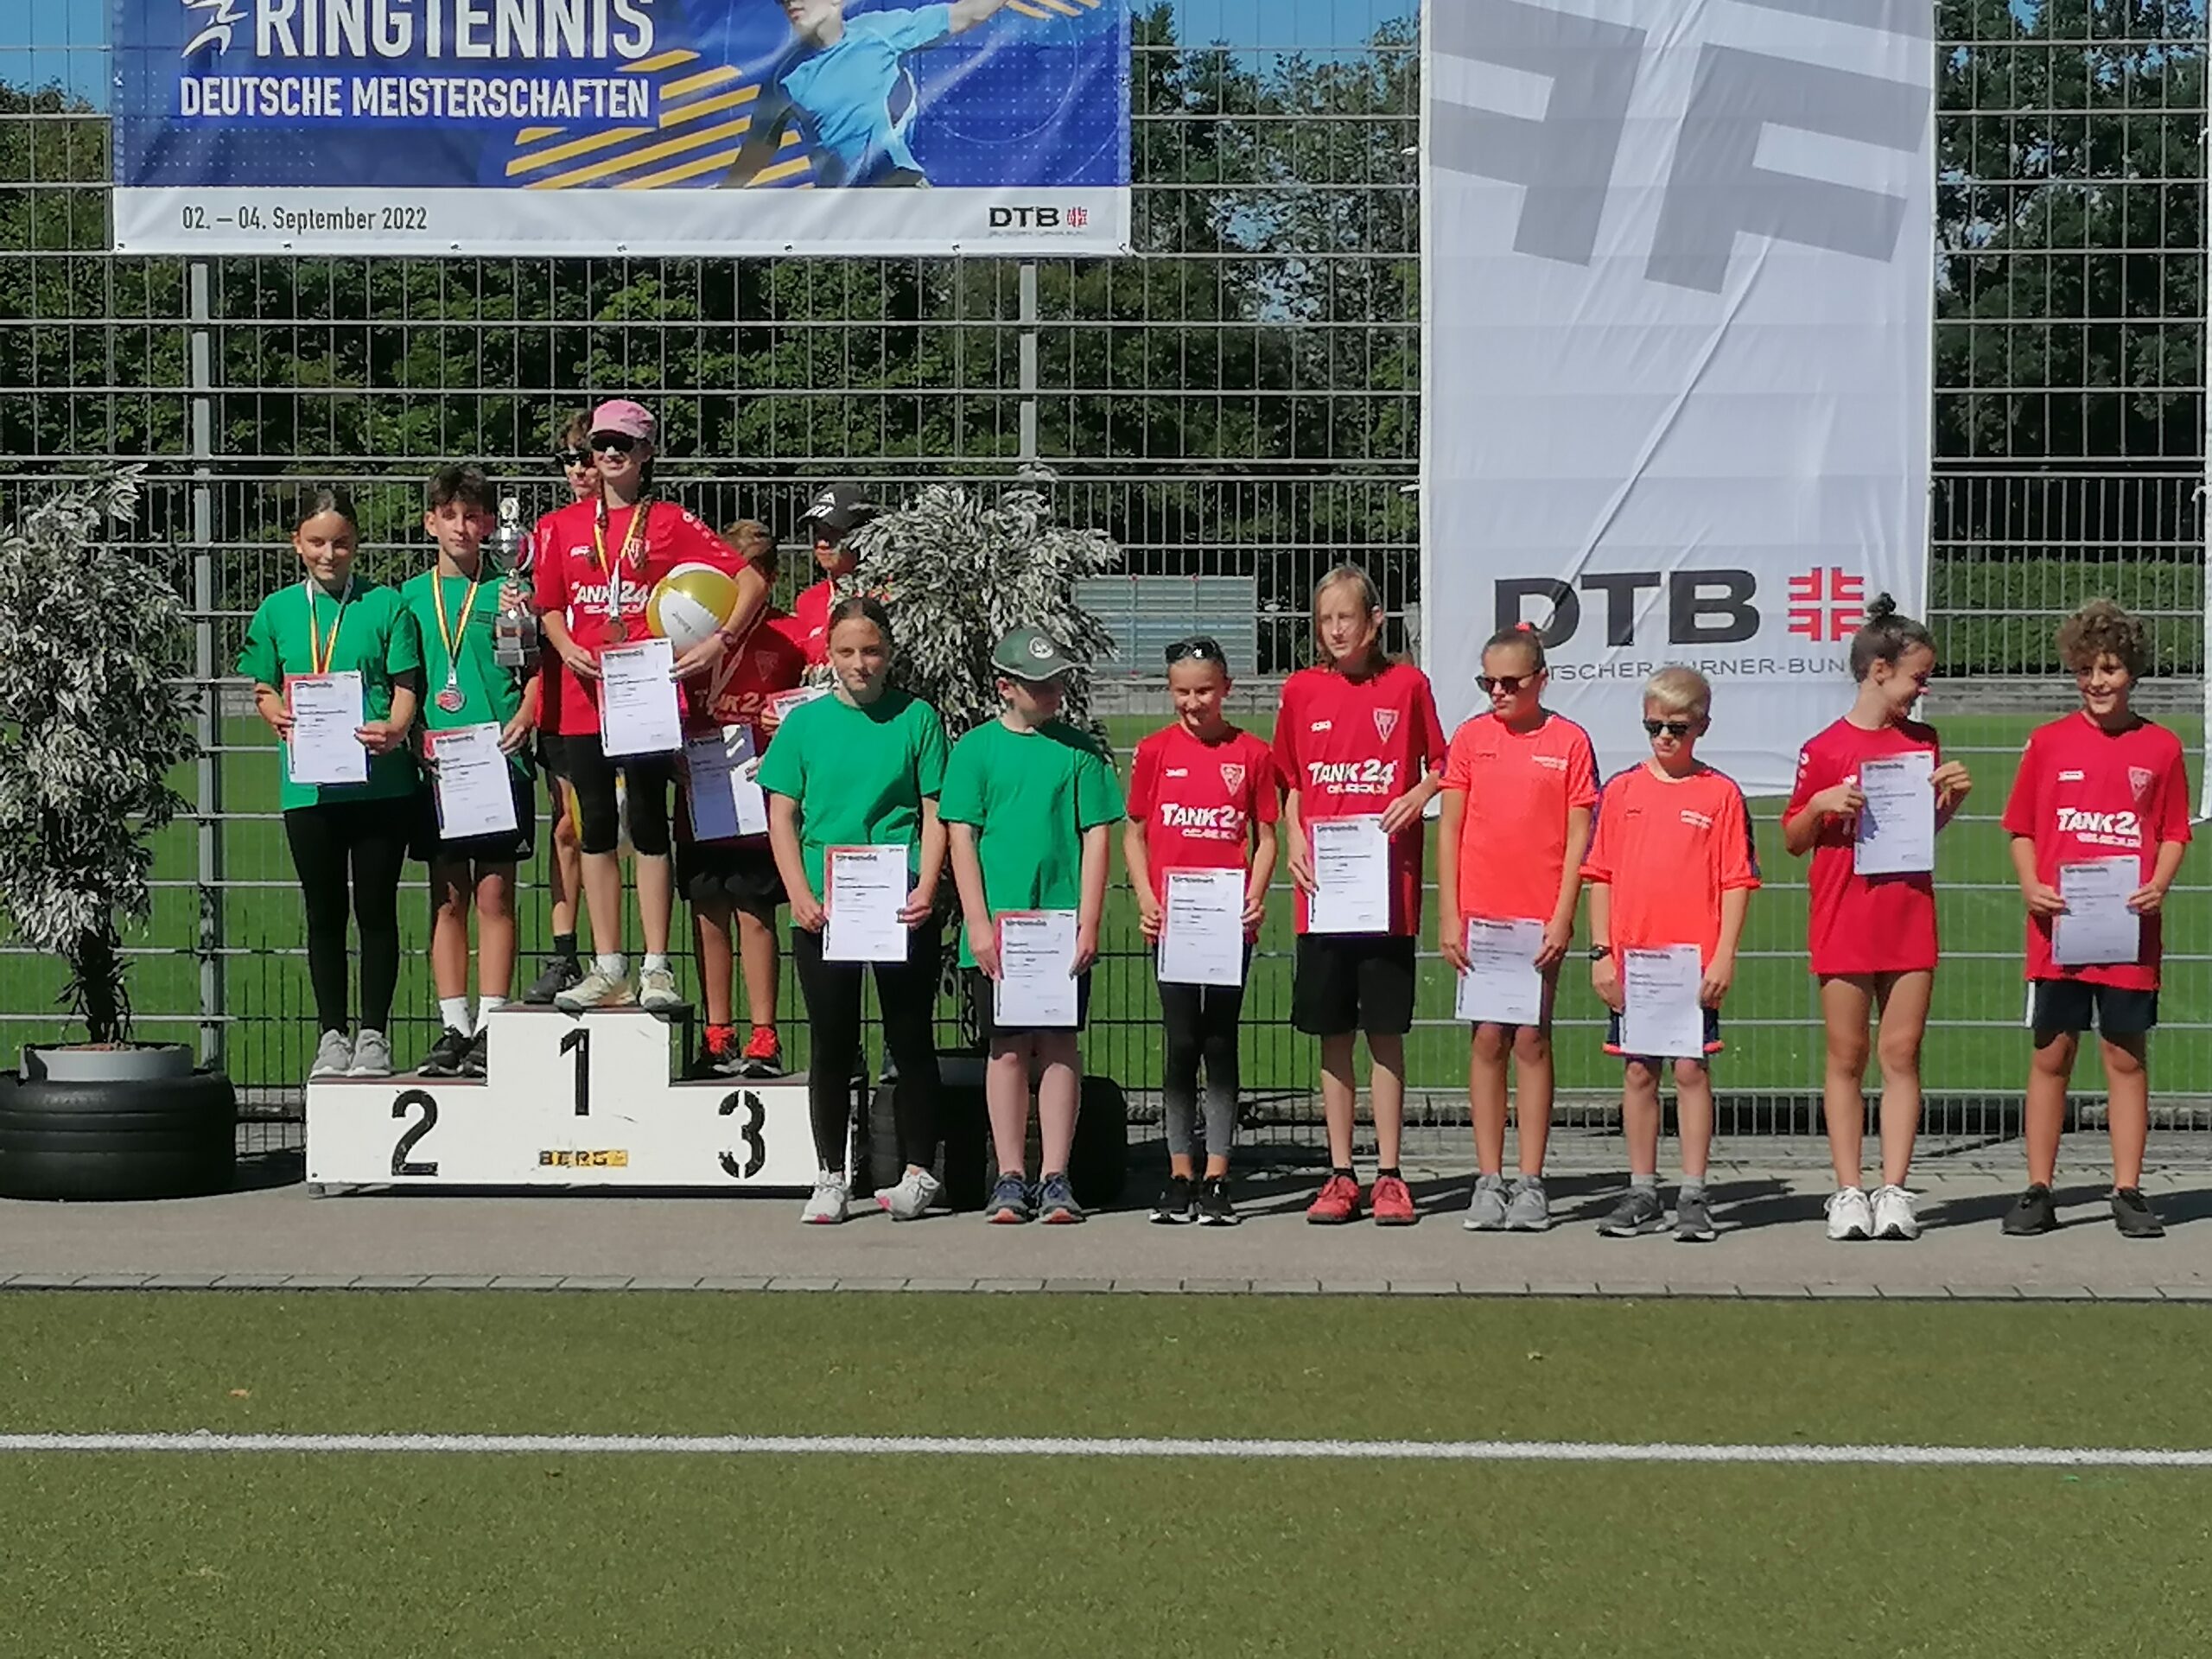 Read more about the article Ergebnisse des Mixed bei den Deutschen Meisterschaften im Ringtennis